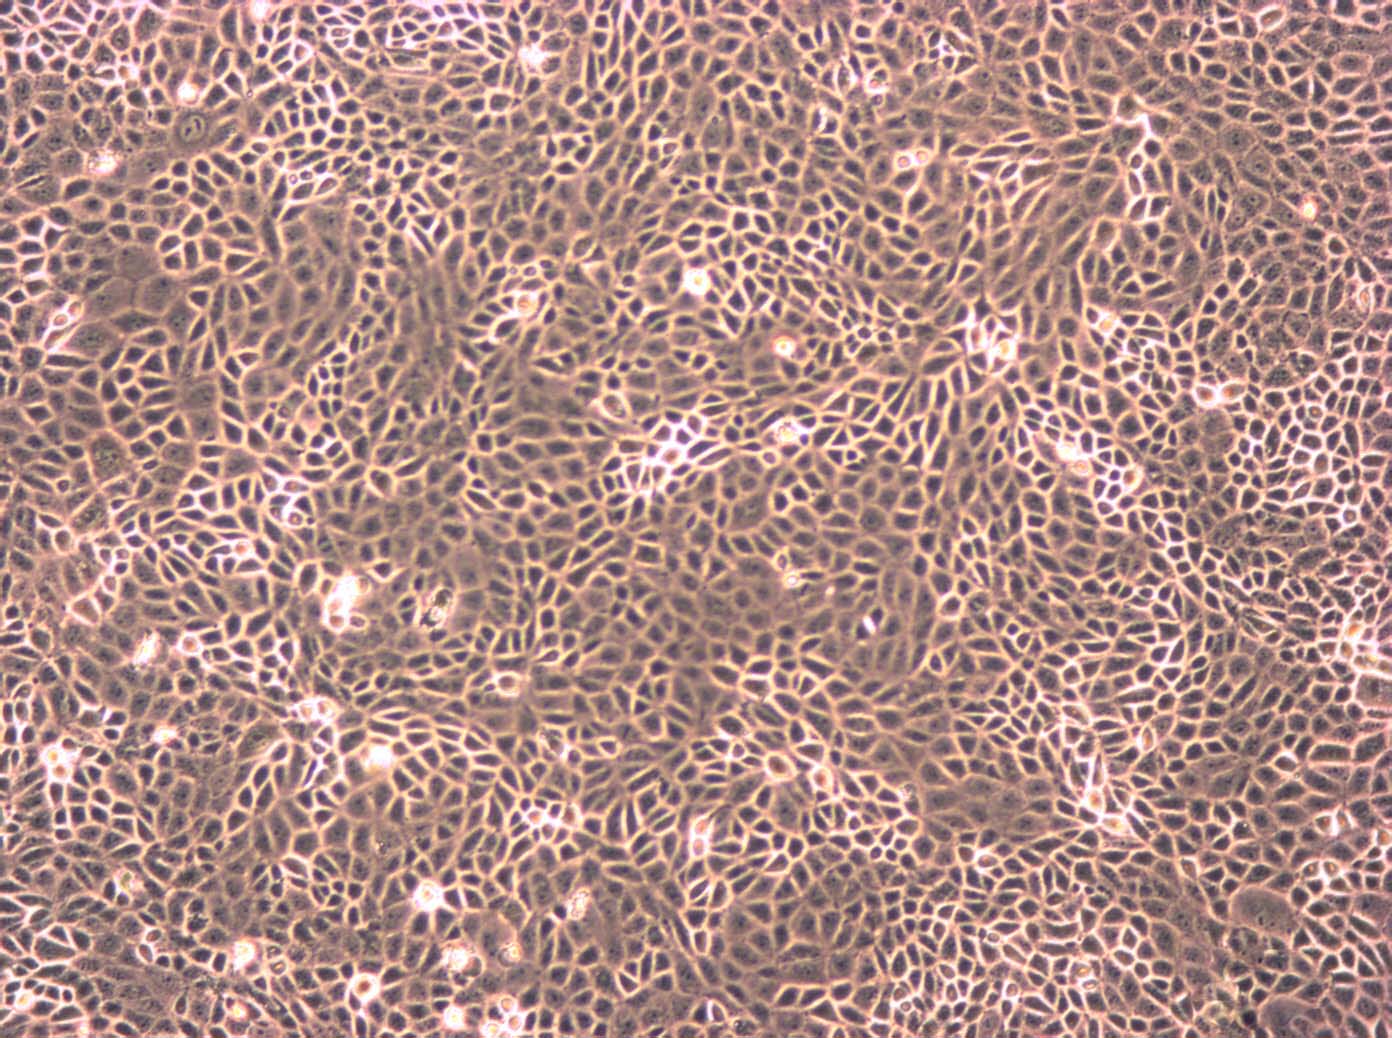 LS411N Cells|人盲肠癌需消化细胞系,LS411N Cell